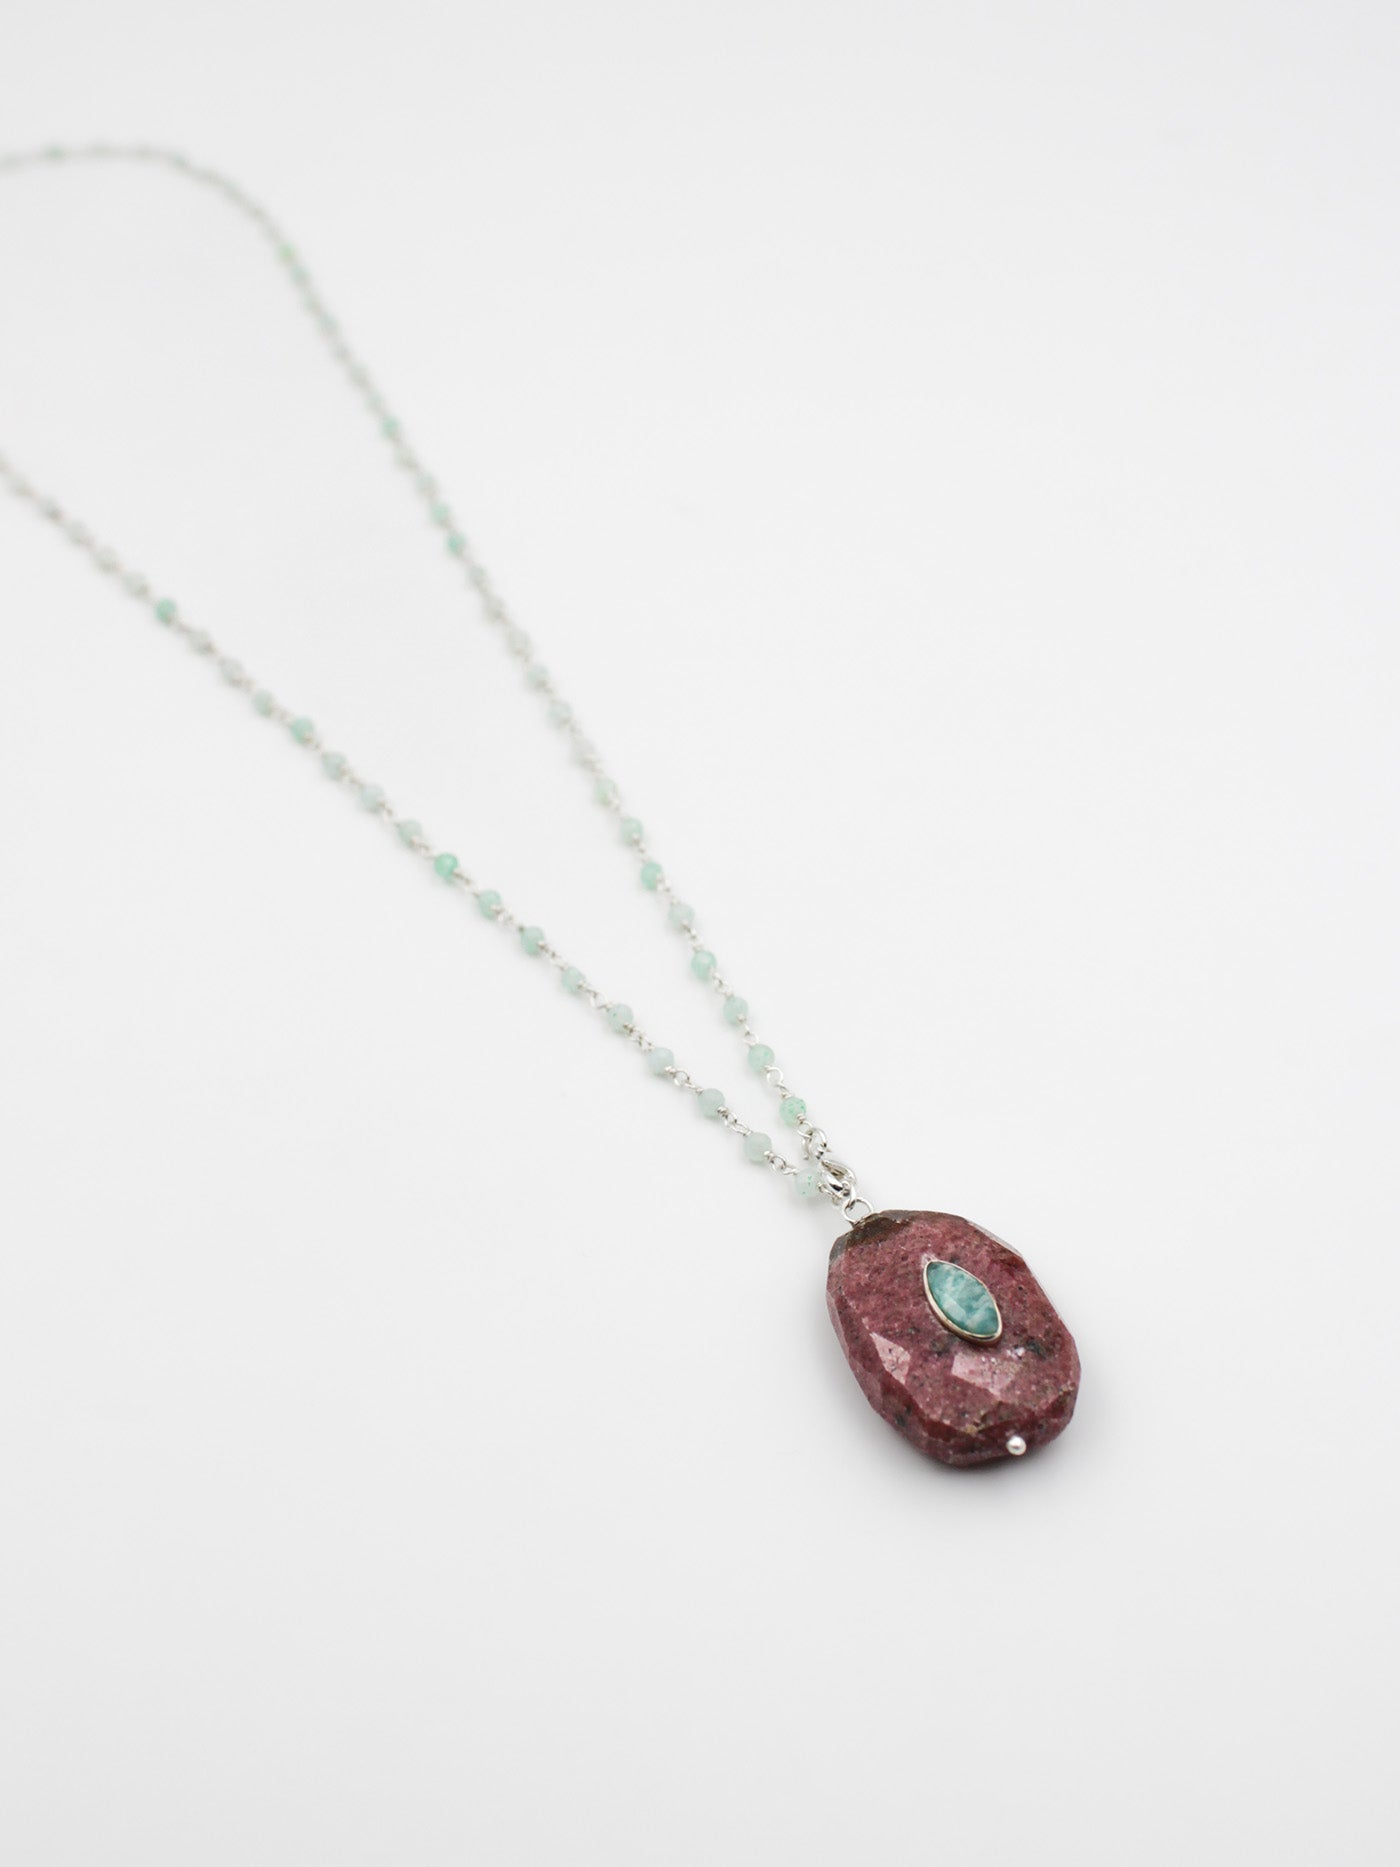 Collier perles et pierre facetée - gamme LOUISE - argent 925 - pierres naturelles : chrysoprase, rhodonite, amazonite - nouvelle collection 23FW - l’Atelier des Dames